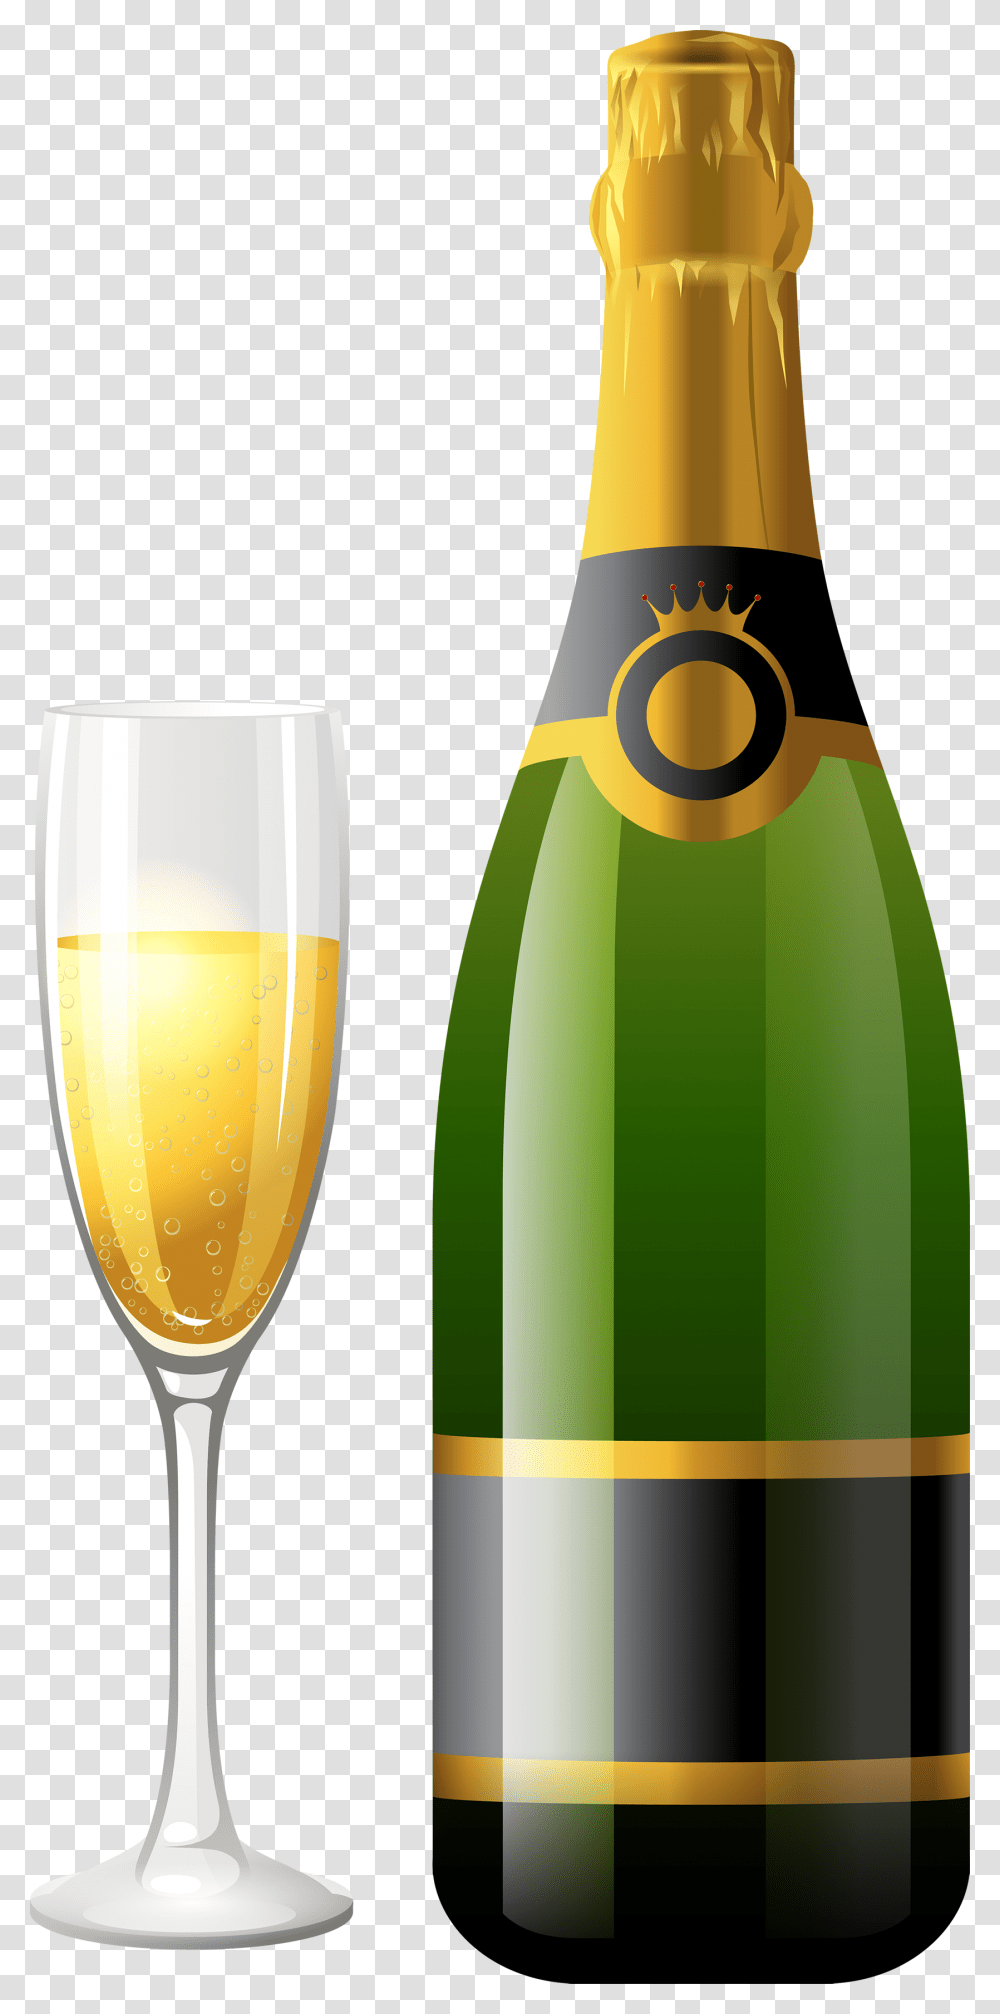 Champagne Images Champagne Bottle Glass, Beer, Alcohol, Beverage, Drink Transparent Png